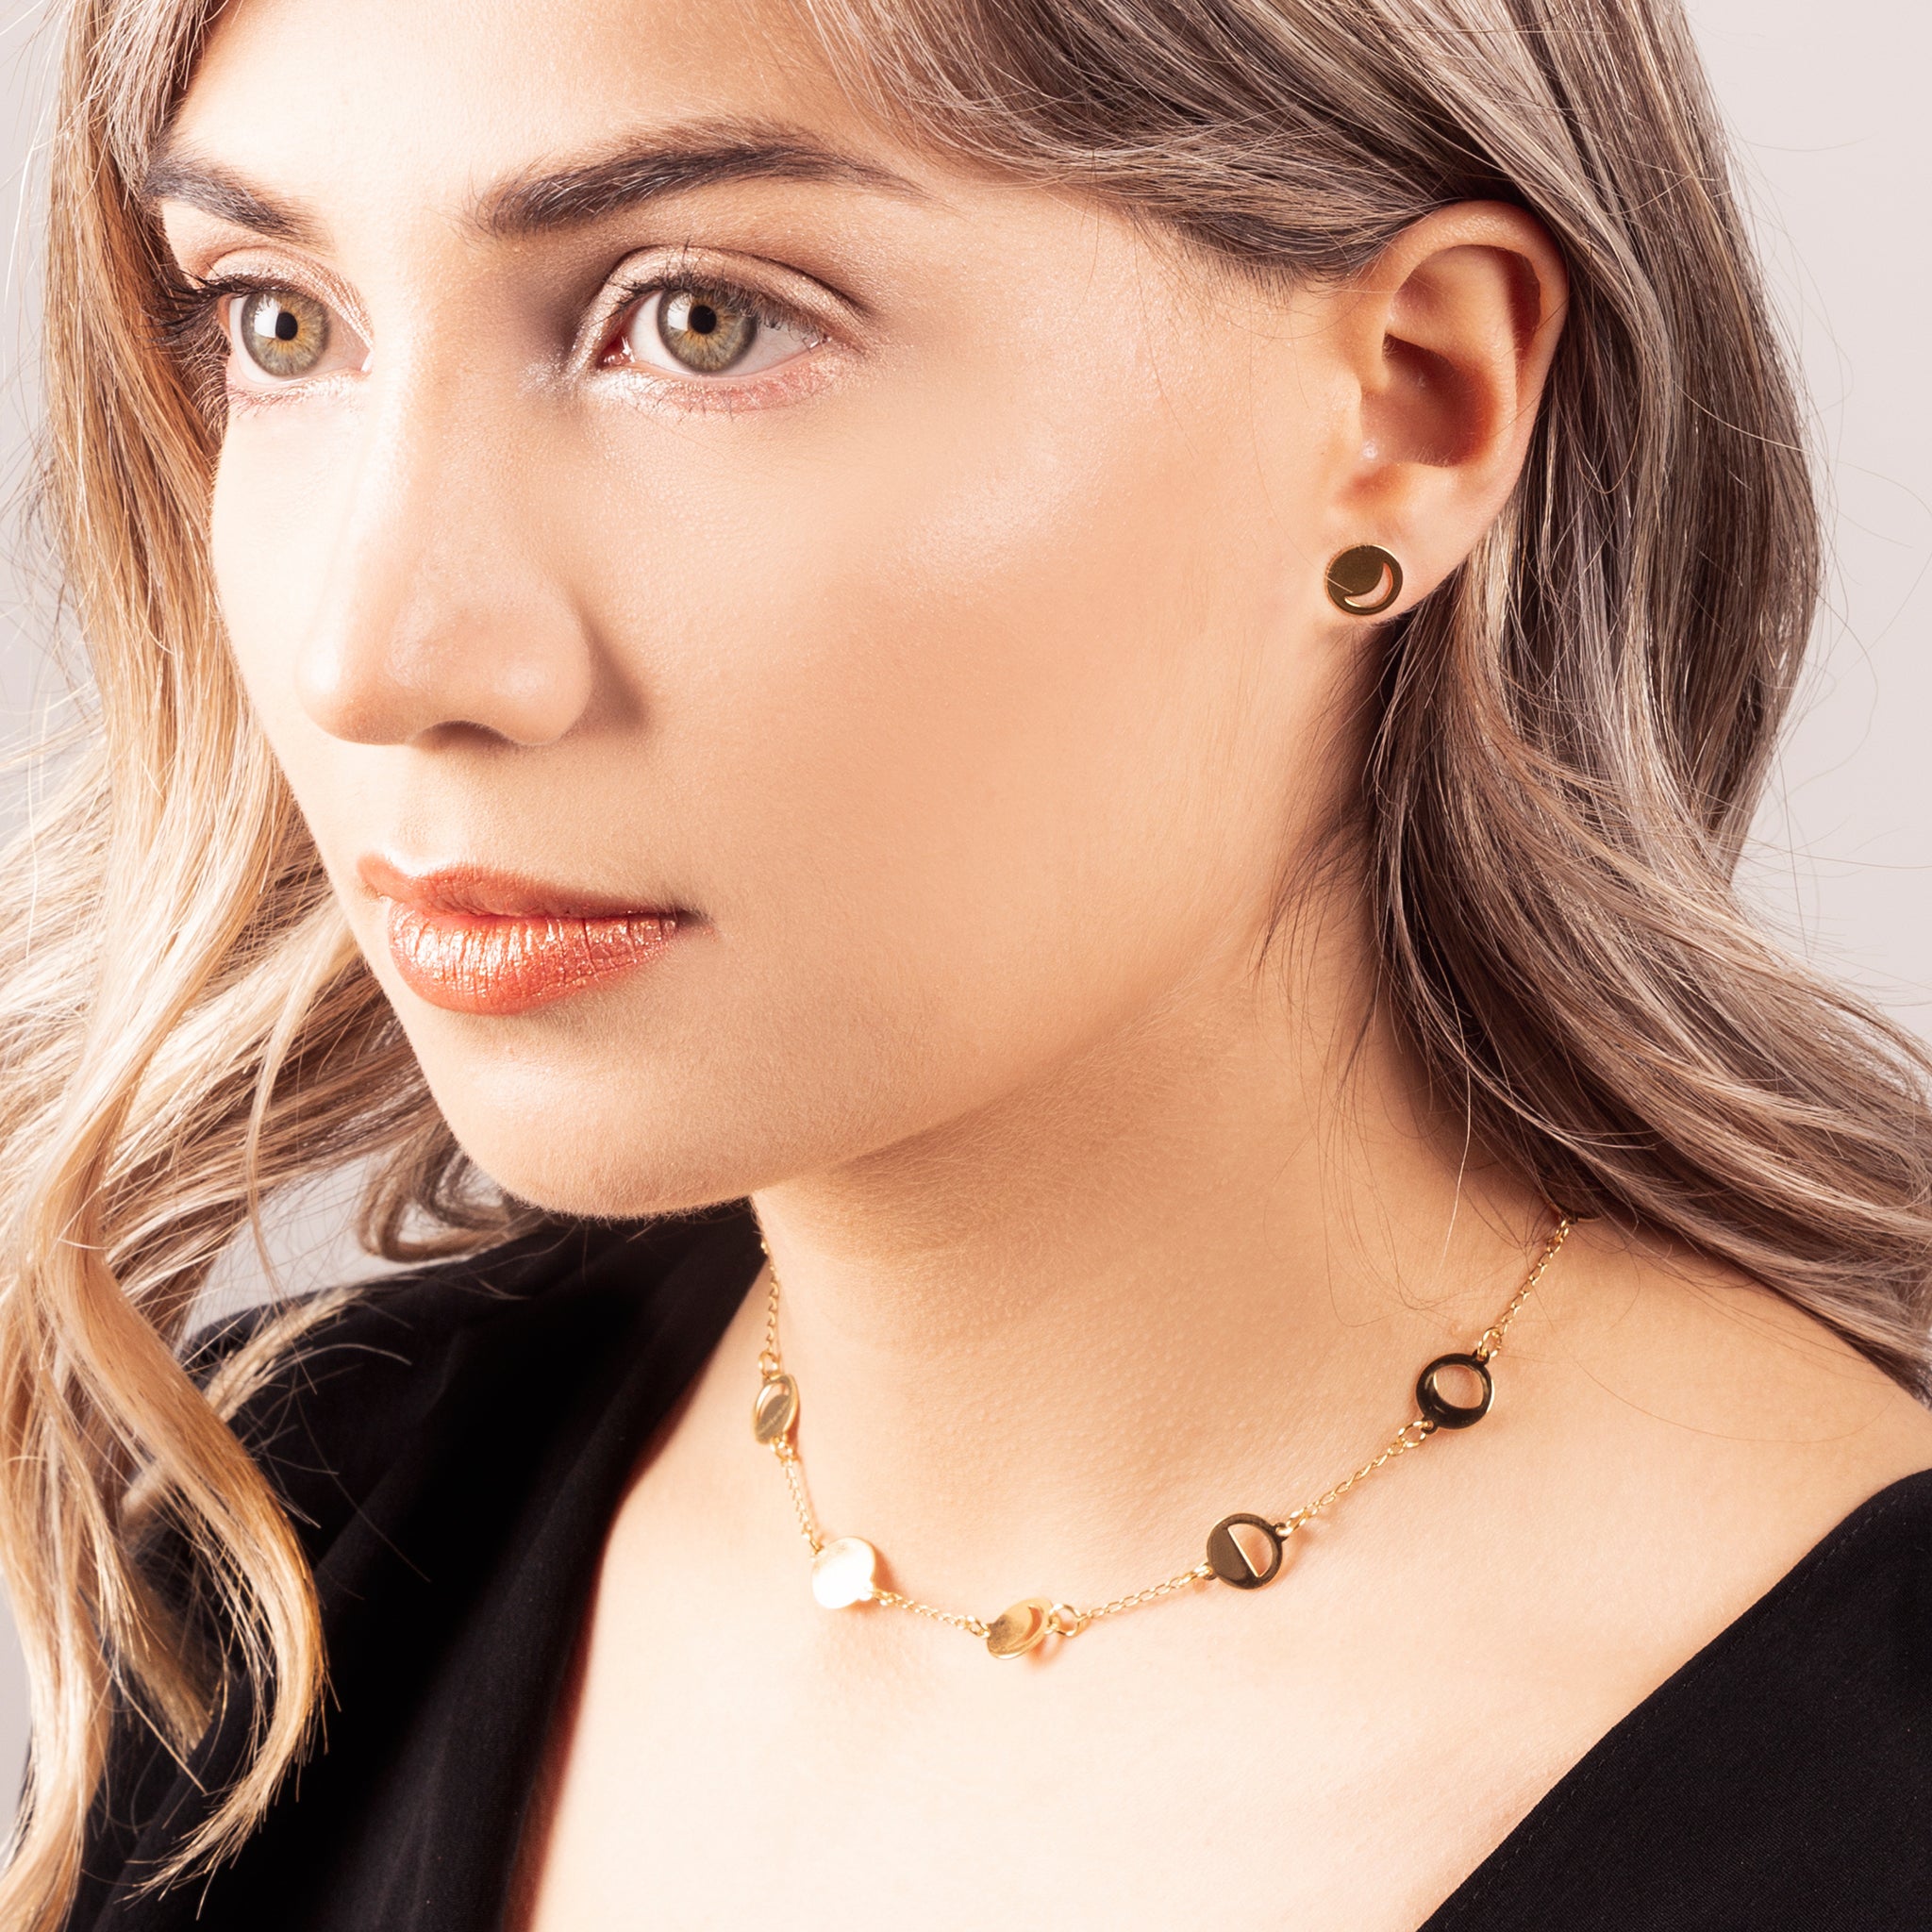 Millié Jewelry - Millié Jewelry - Luna Choker Necklace - Collares - Diseño Mexicano - Hecho en México